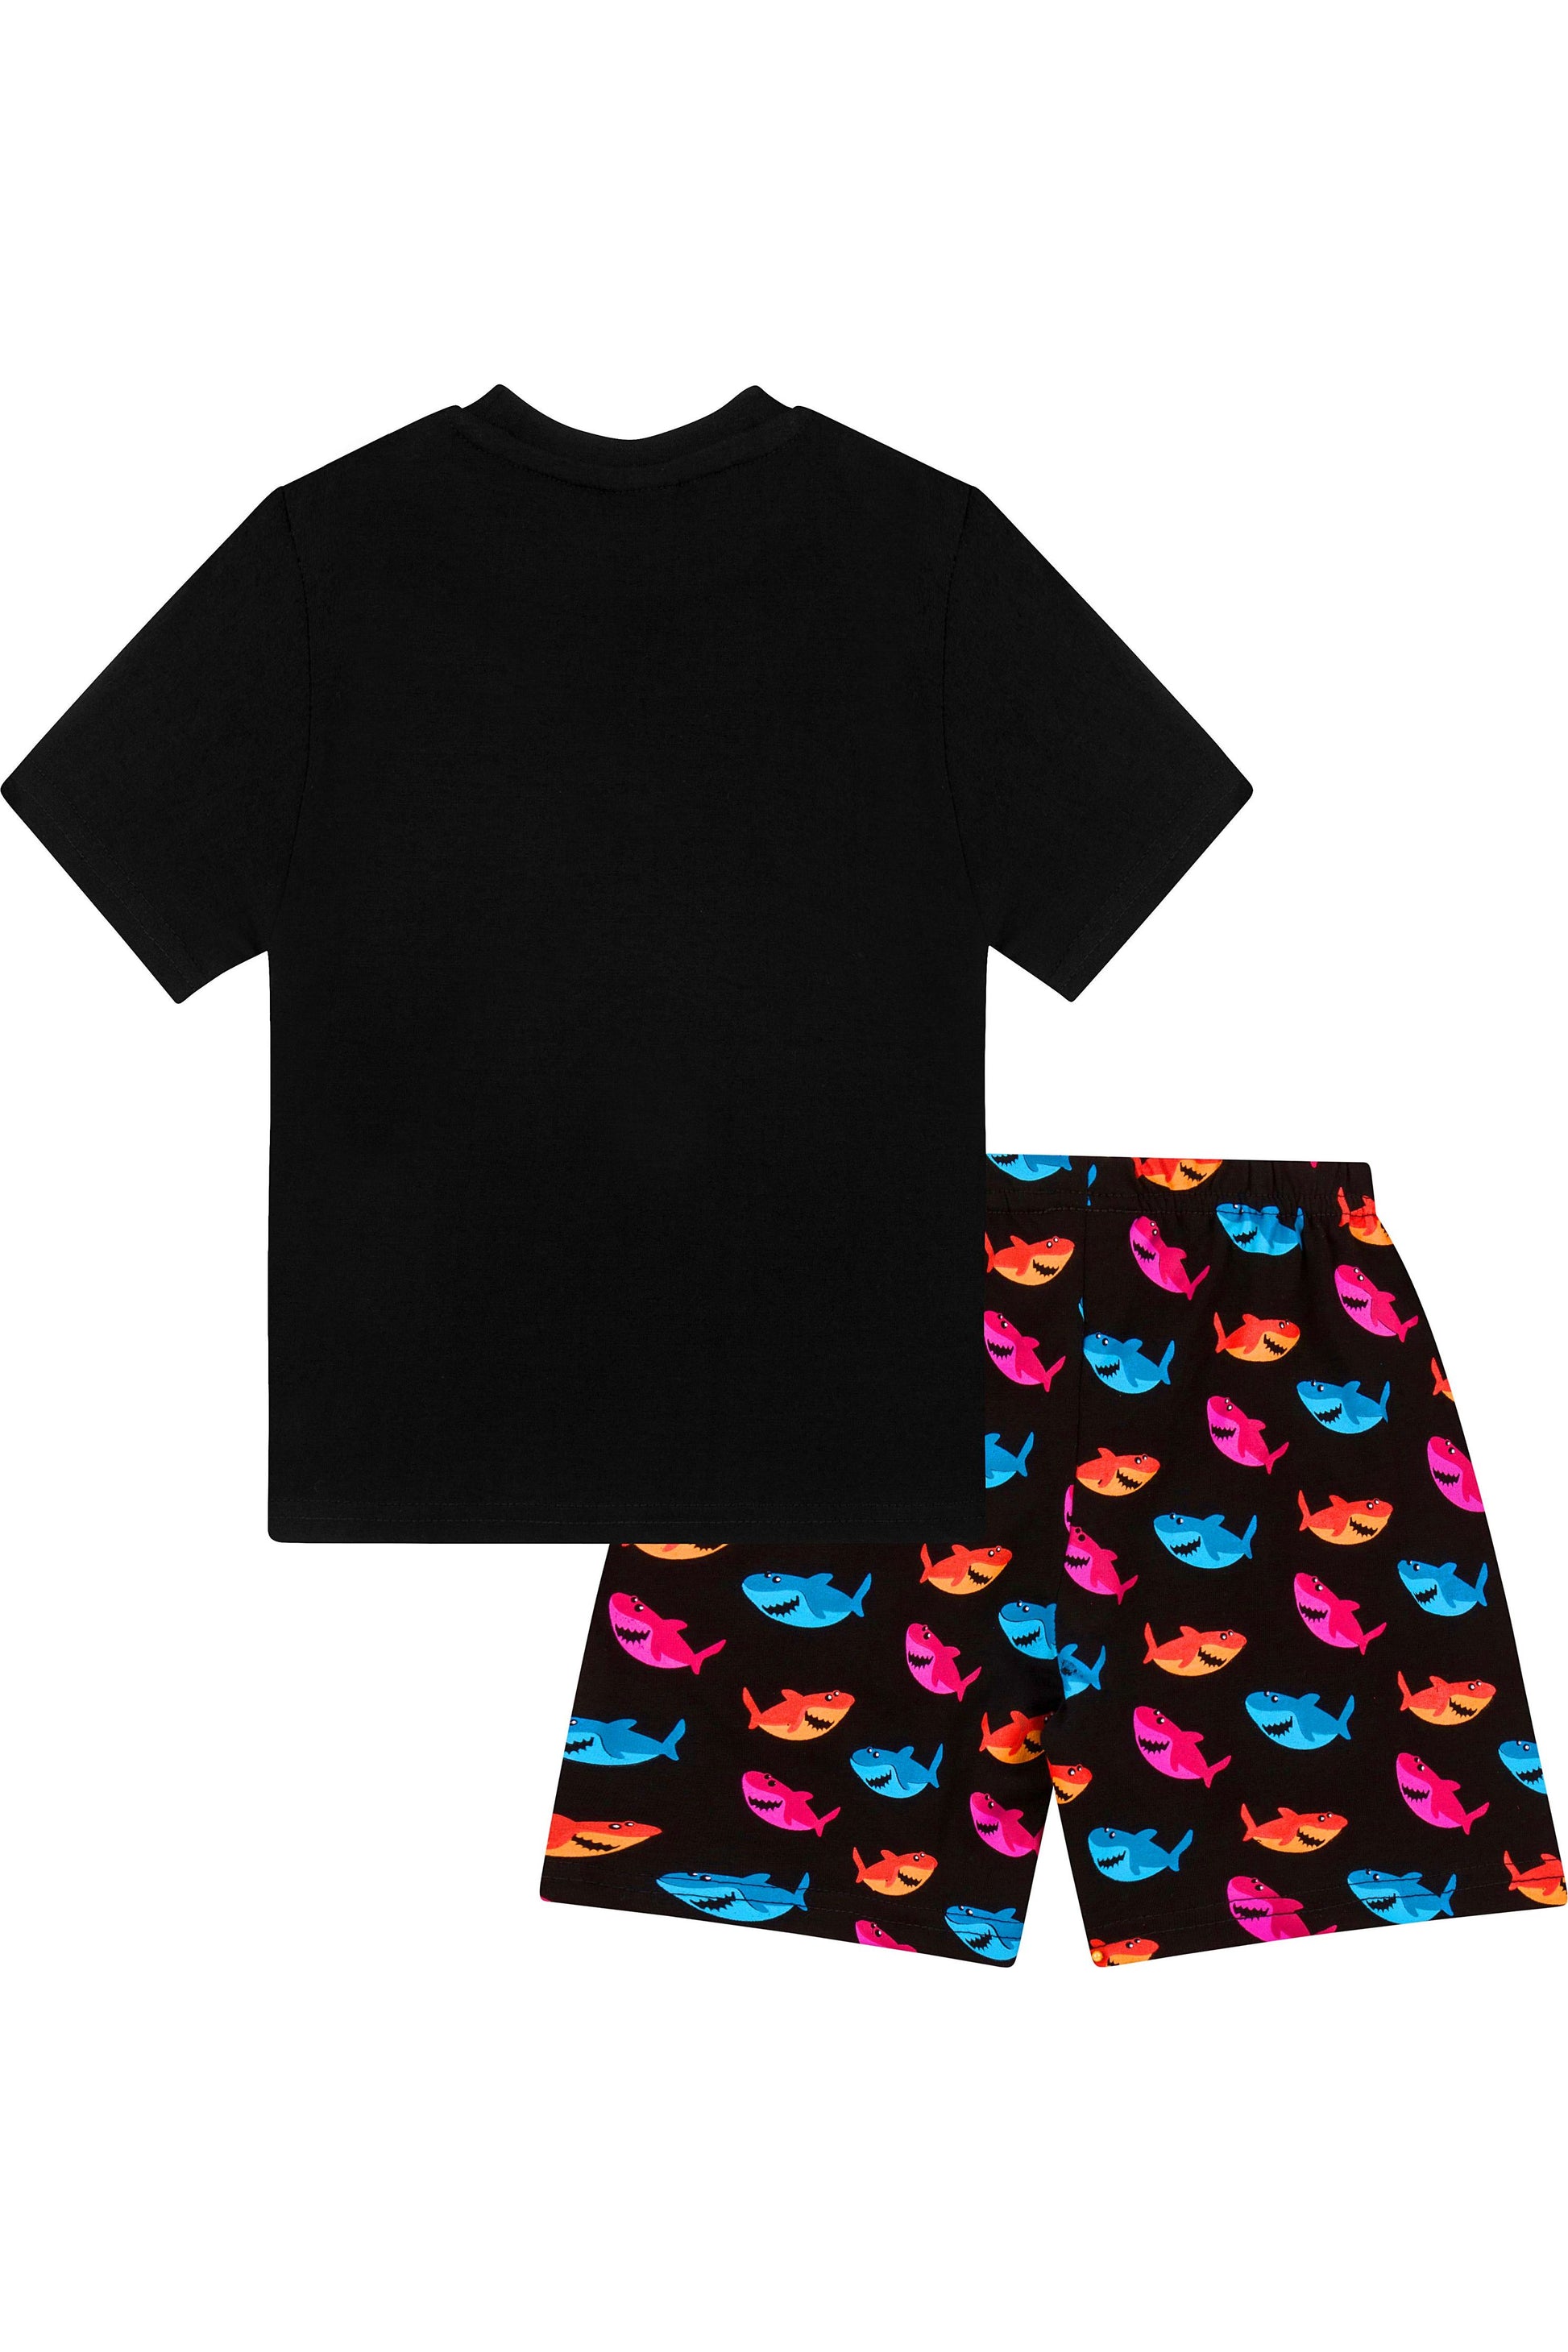 Baby Shark Short Pyjamas - Pyjamas.com